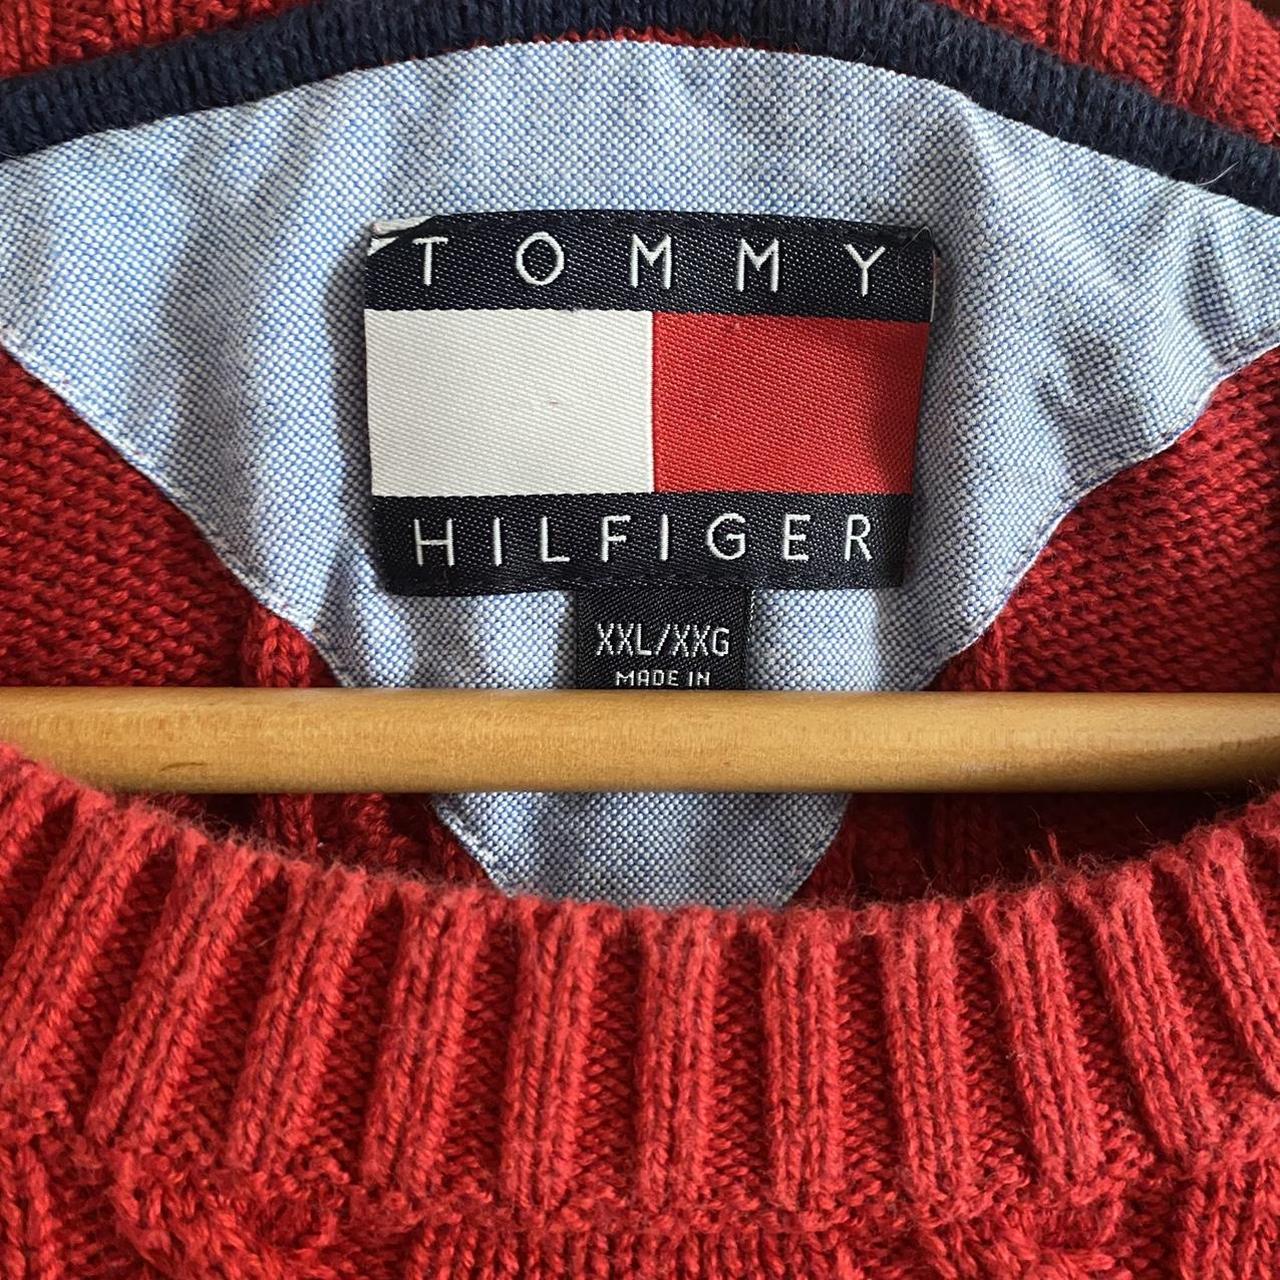 Vintage 90's red tommy hilfiger knitted grandpa... - Depop